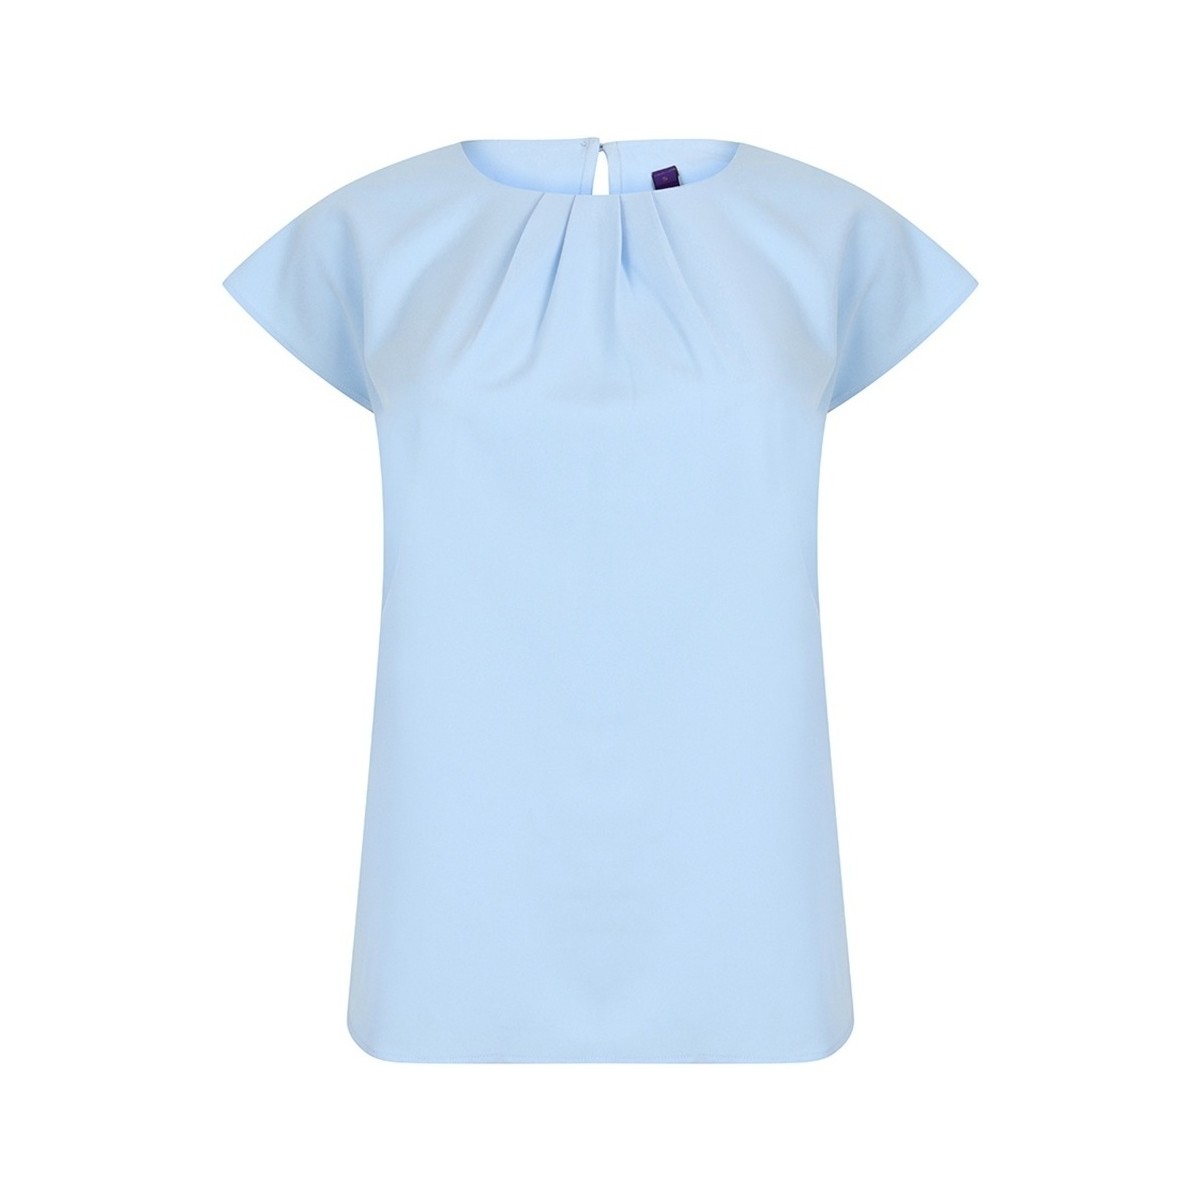 Vêtements Femme T-shirts manches courtes Henbury HB597 Bleu